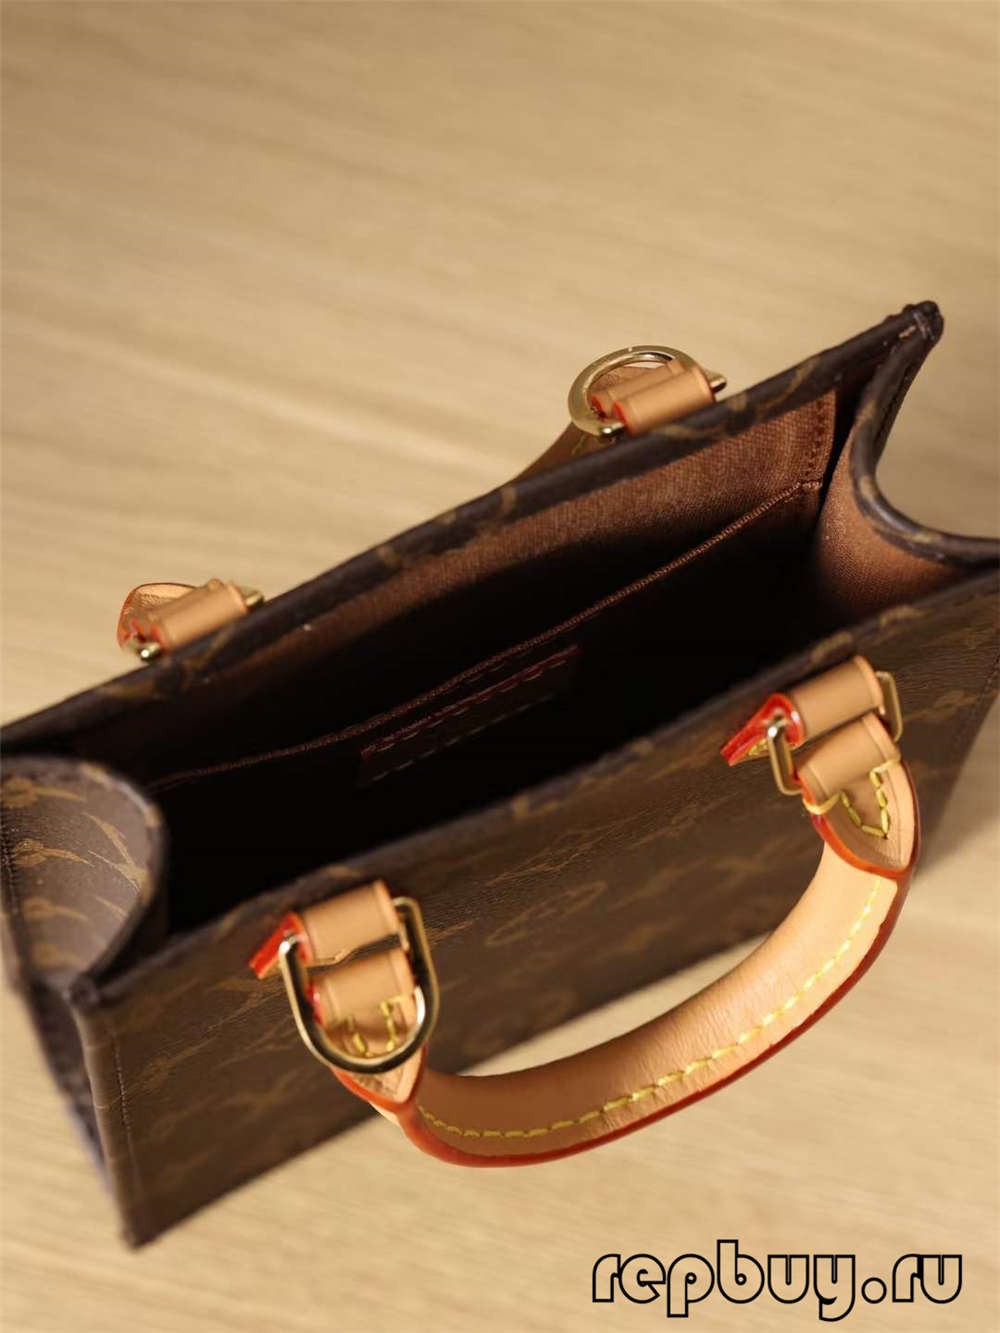 Louis Vuitton M69442 Petit Sac Plat найвищої якості репліки сумок (2022 Оновлено) - Інтернет-магазин підробленої сумки Louis Vuitton найкращої якості, копія дизайнерської сумки ru